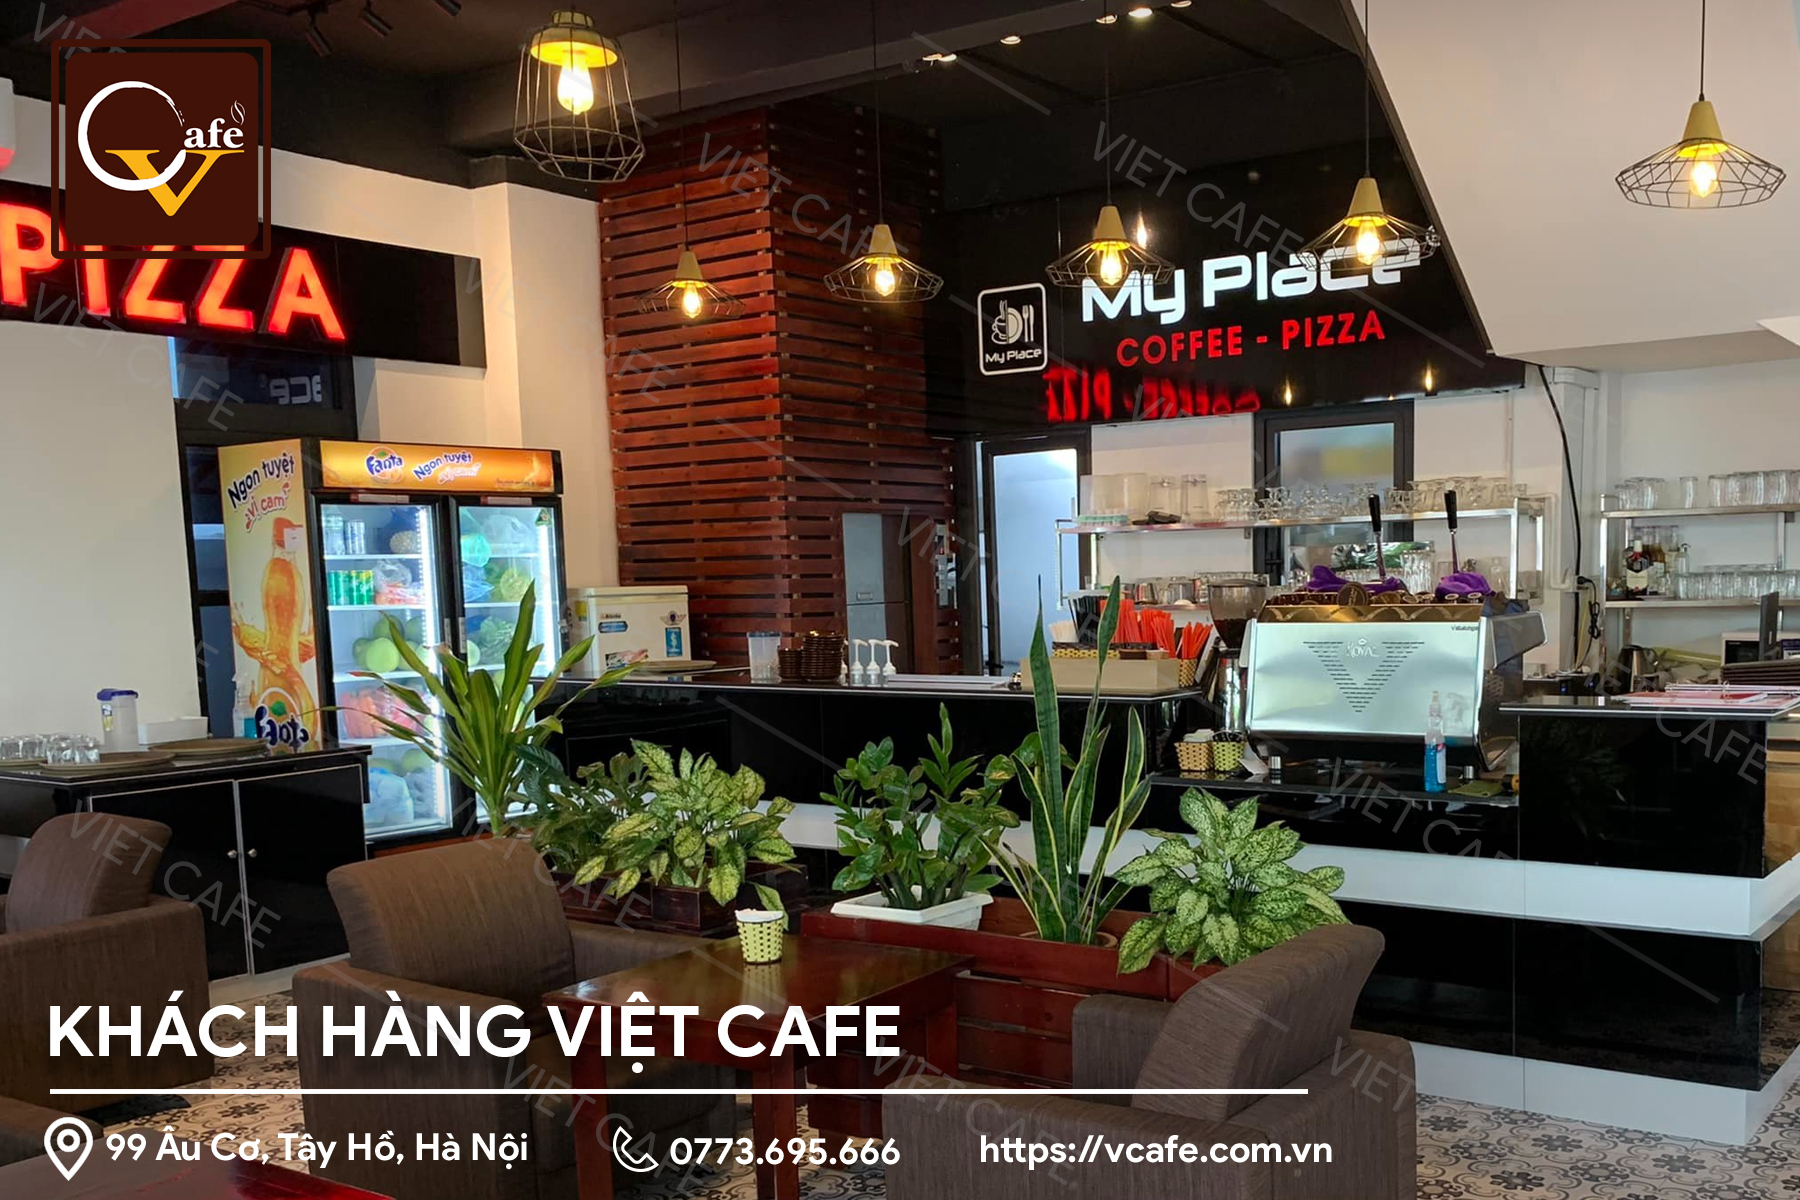 MYPLACE -Coffee, Pizza, Pasta and Gelato - Manhattan 02-06 Vinhome Imperia - Thượng Lý - Hồng Bàng - Hải Phòng